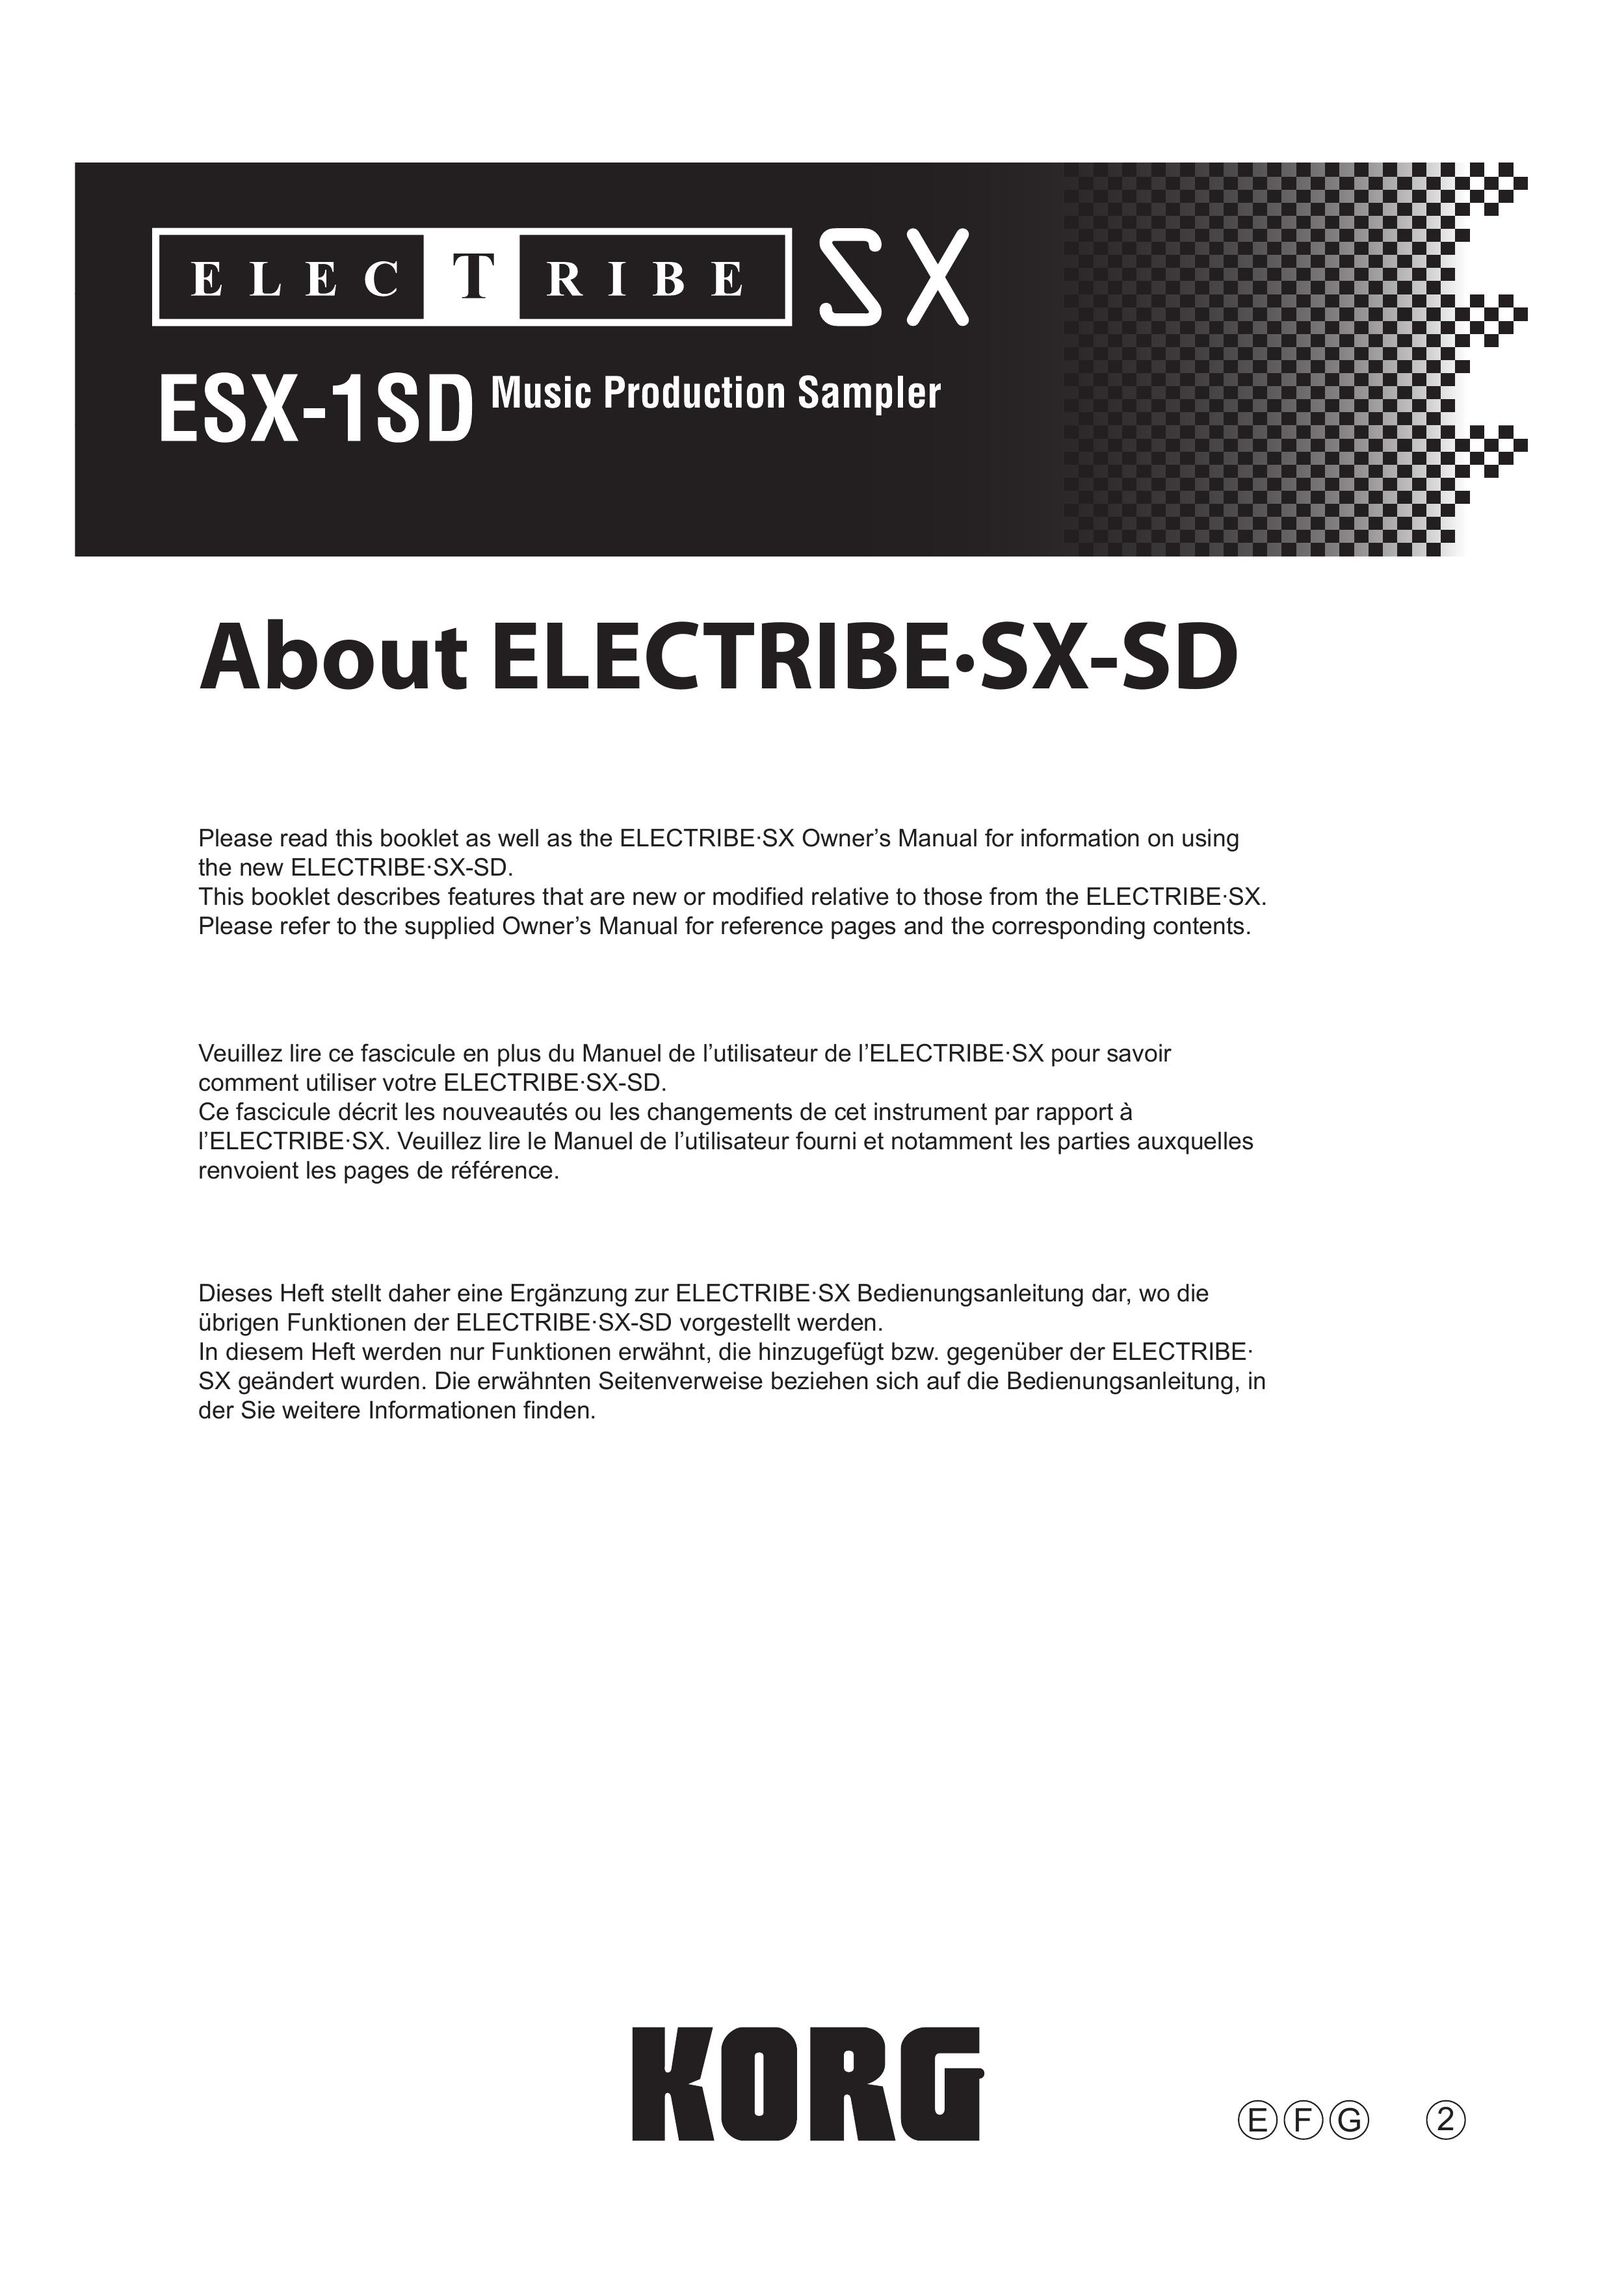 Korg ESX-1SD Stereo System User Manual